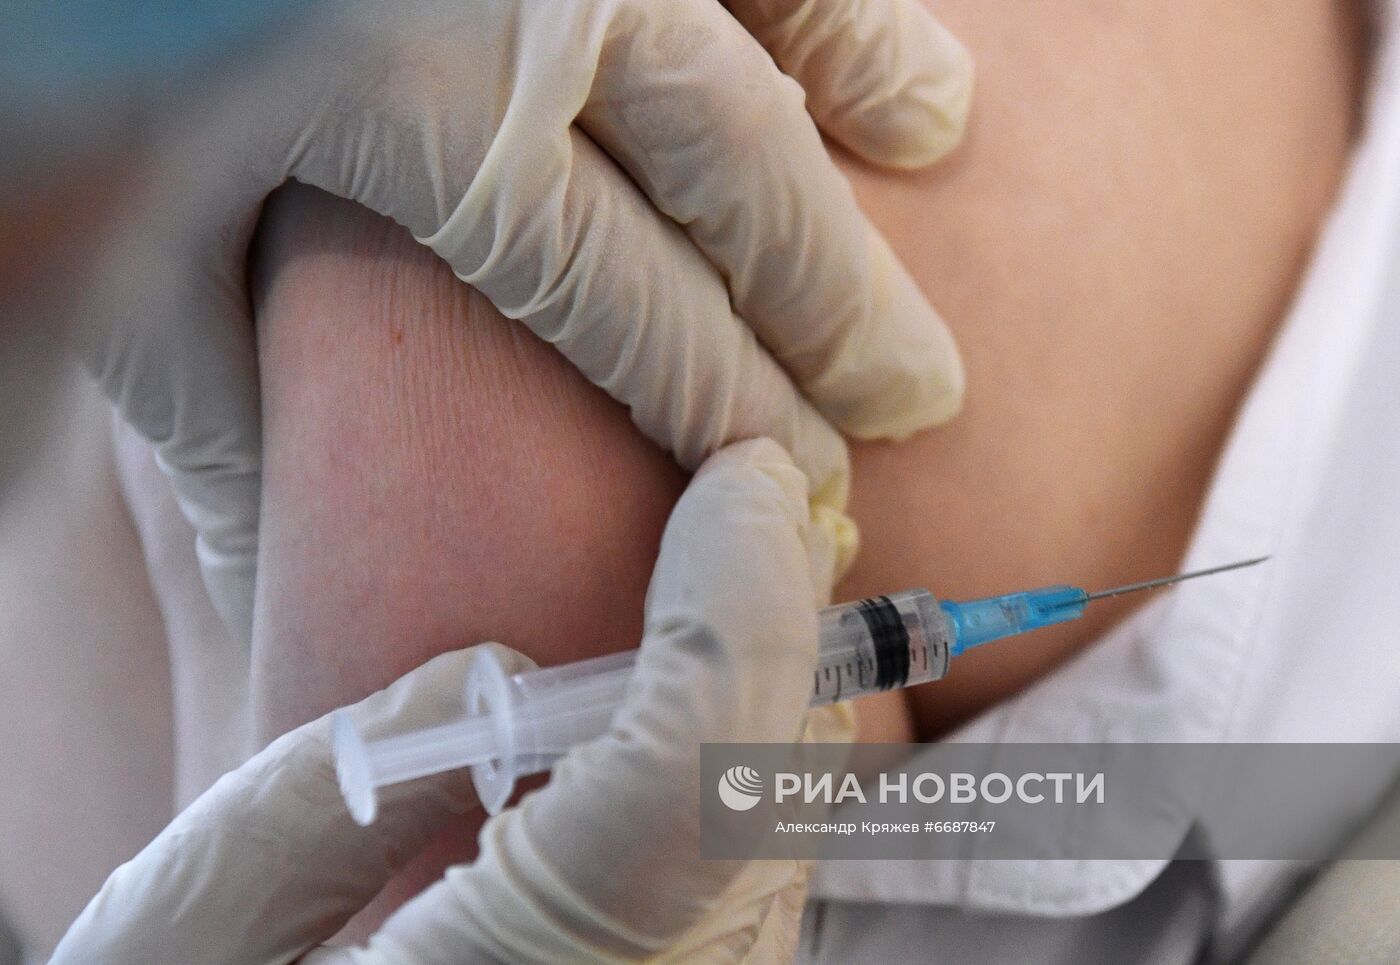 Выездная вакцинация сотрудников отеля "River Park" в Новосибирске